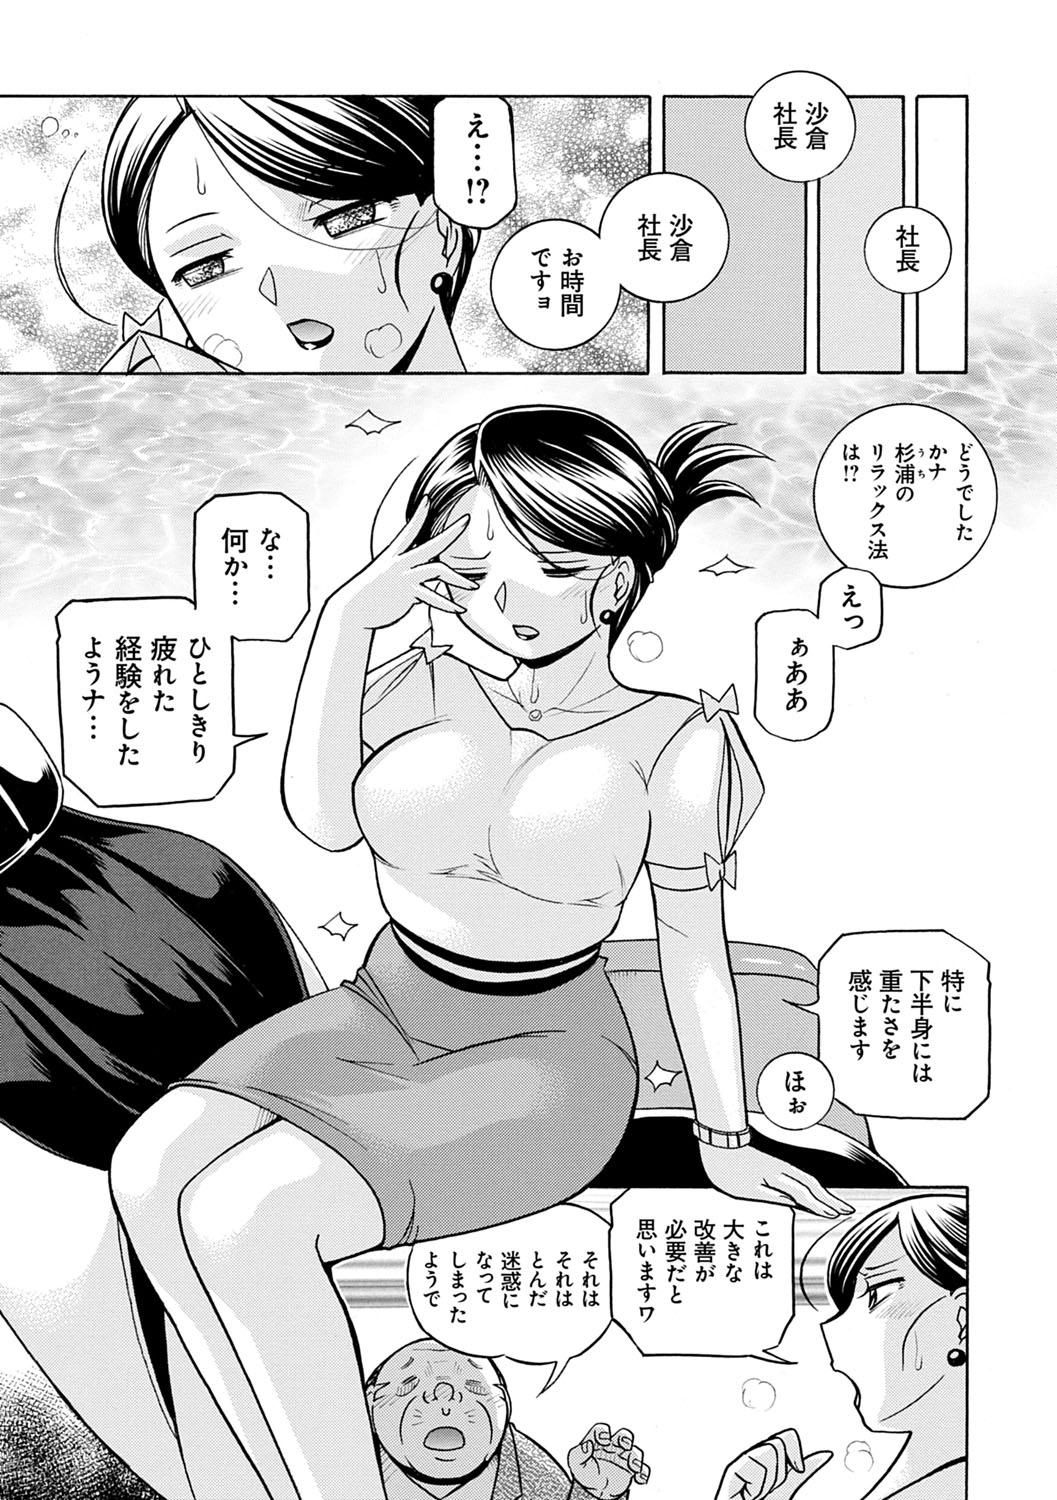 [Chuuka Naruto] Bijin Shachou Yuki ~Mitsuyaku no Nikusettai~ - YUKI of The Beautiful Chief Executive Officer ~The secret sweet treaty by sexual reception~ [Digital] 24